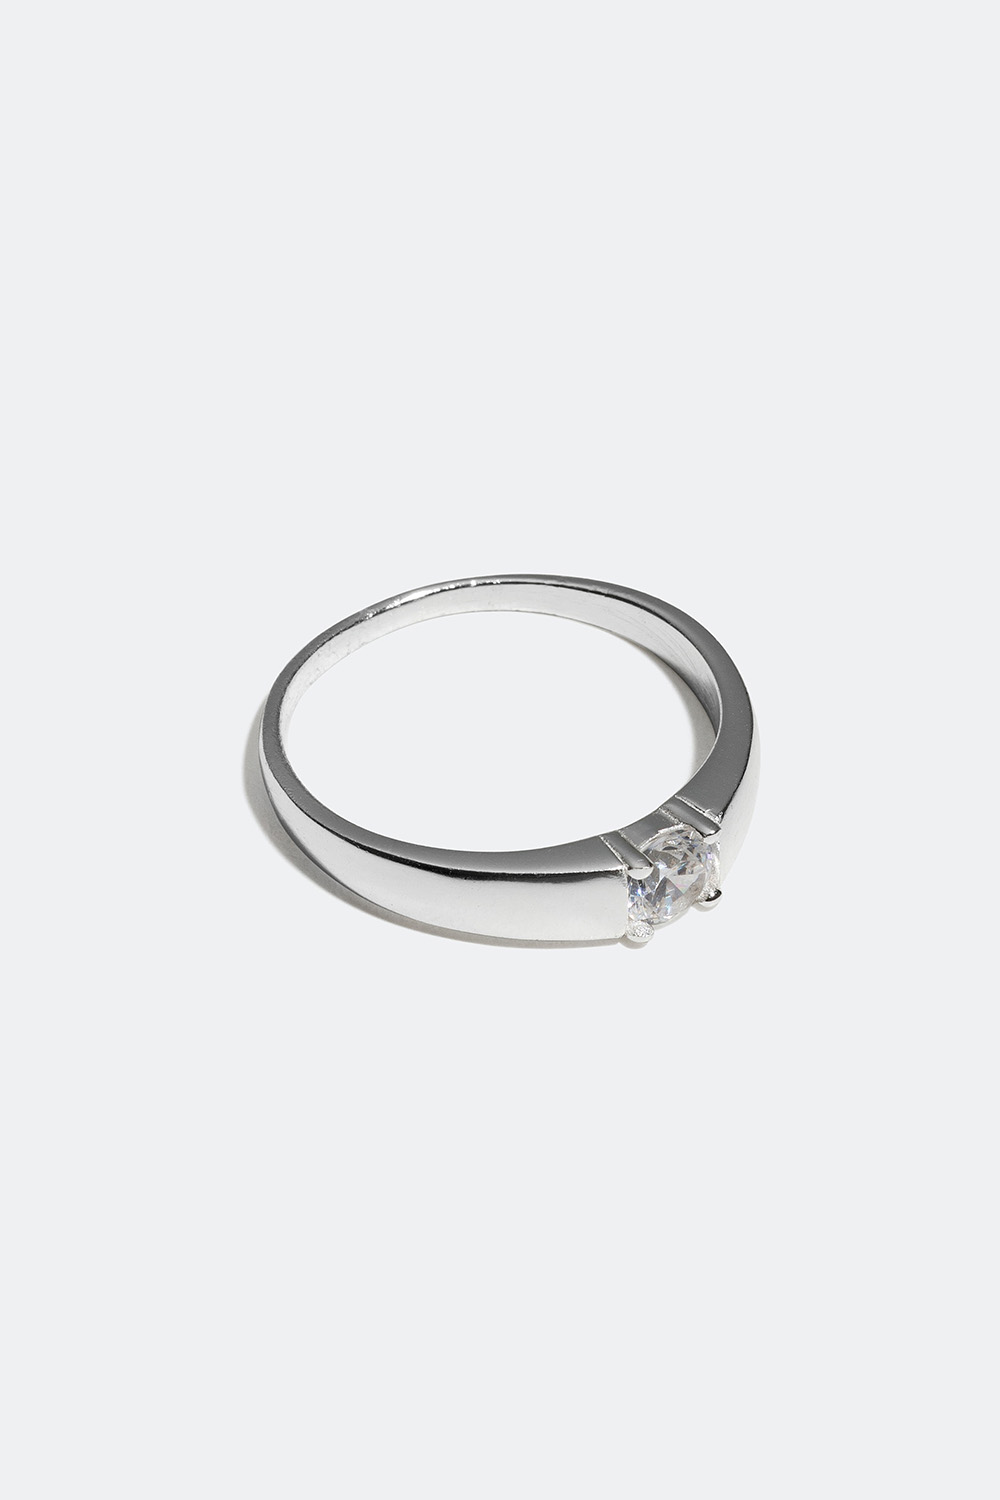 Glatt ring i ekte sølv med zirkonia-sten i gruppen Ekte sølv / Sølvringer / Sølv hos Glitter (55600054)